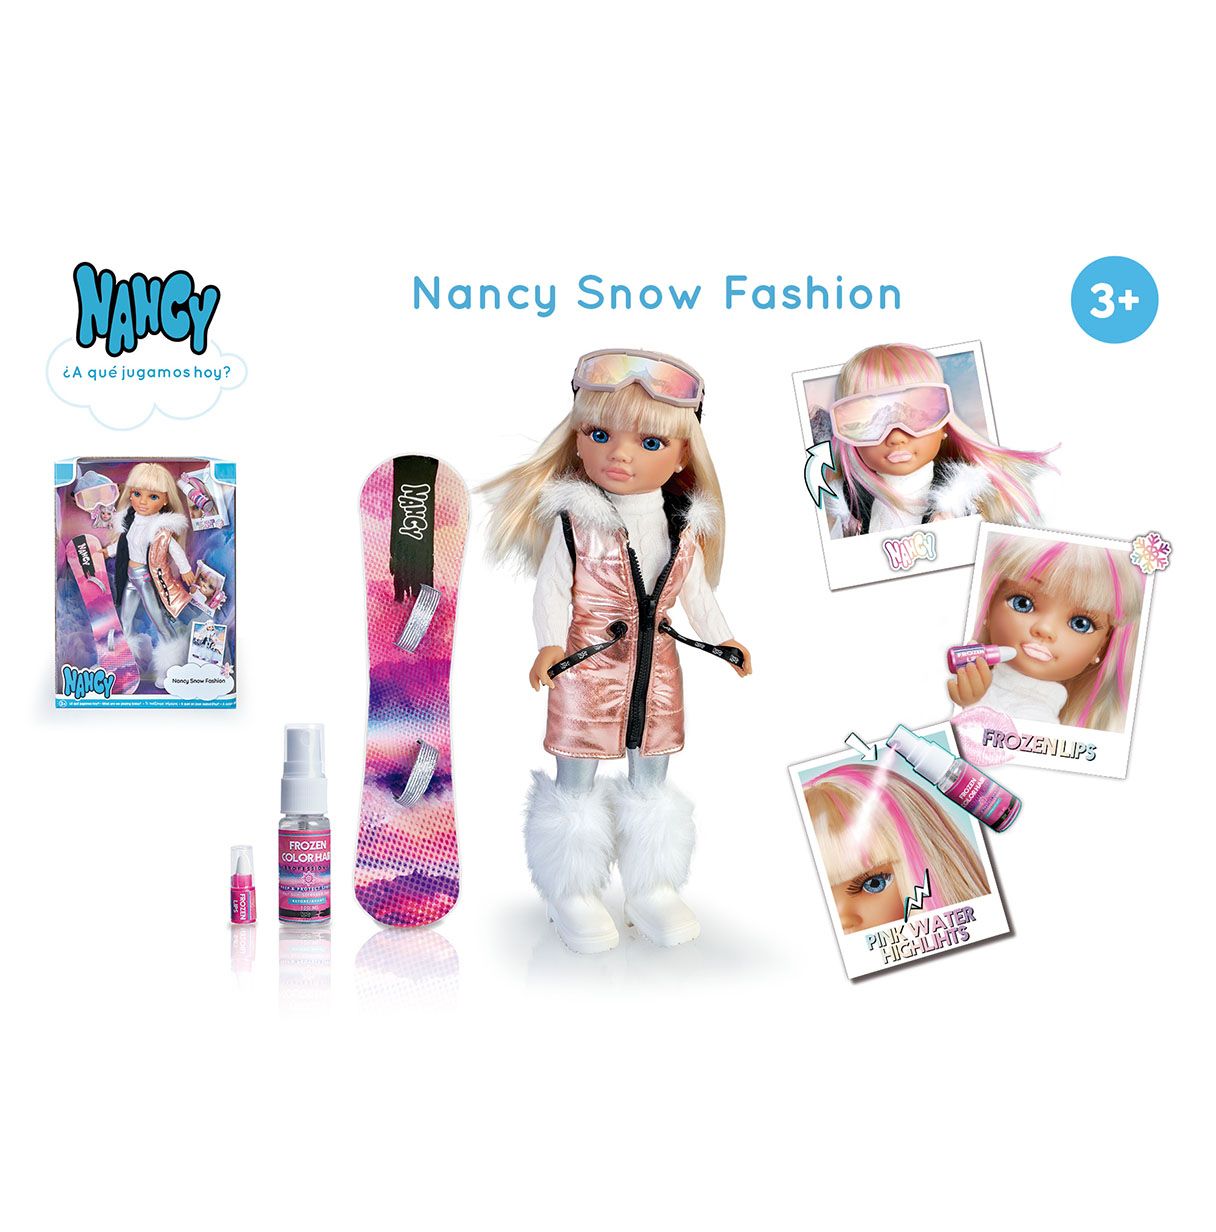 nancy - snow fashion, un día en la nieve, muñeca esquiadora de pelo rubio y mechas rosas, una tabla de snowboard y outfit glam p